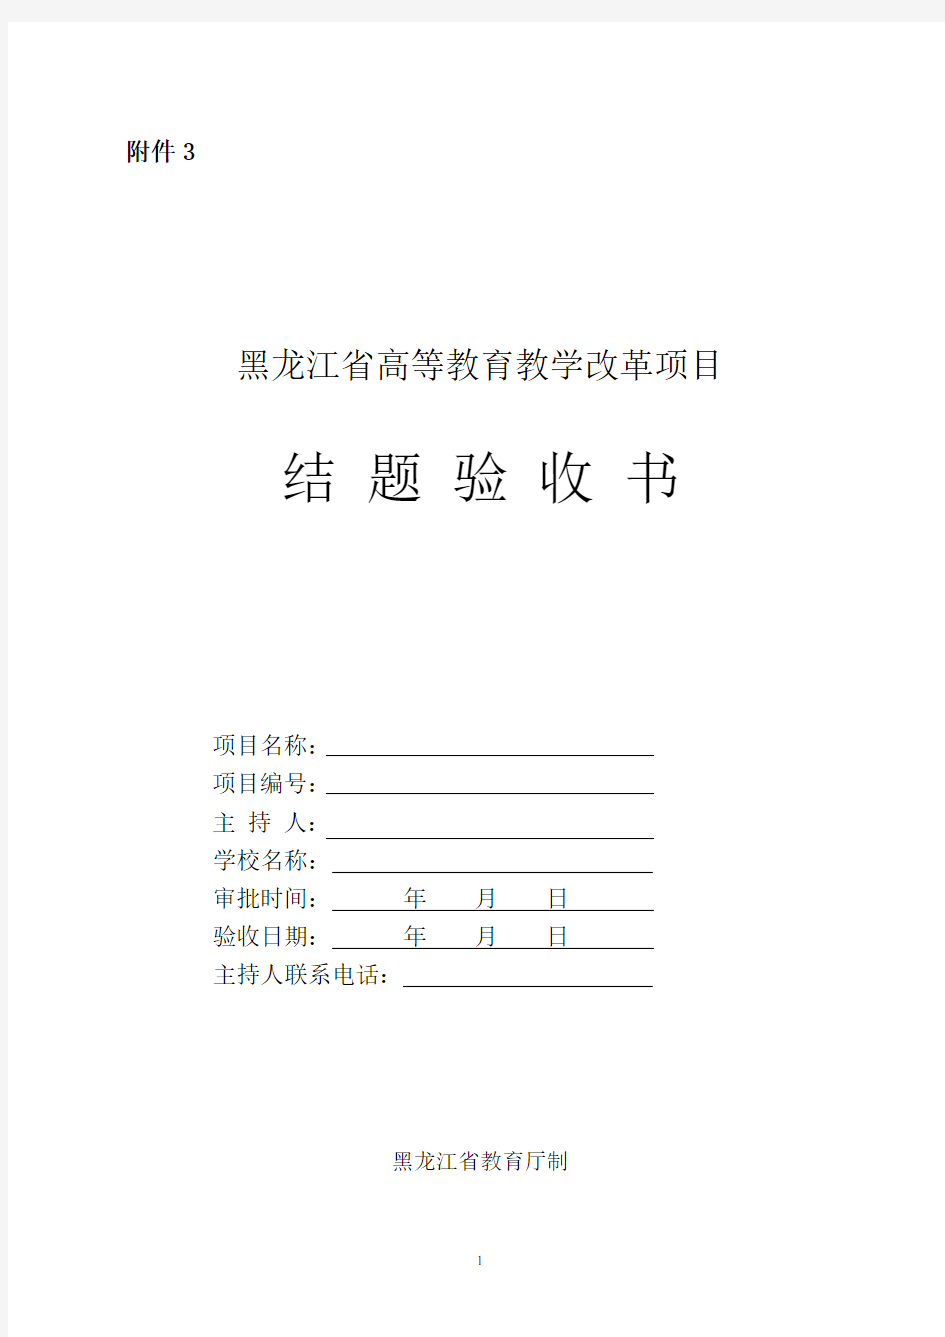 黑龙江省高等教育教学改革项目结题验收书